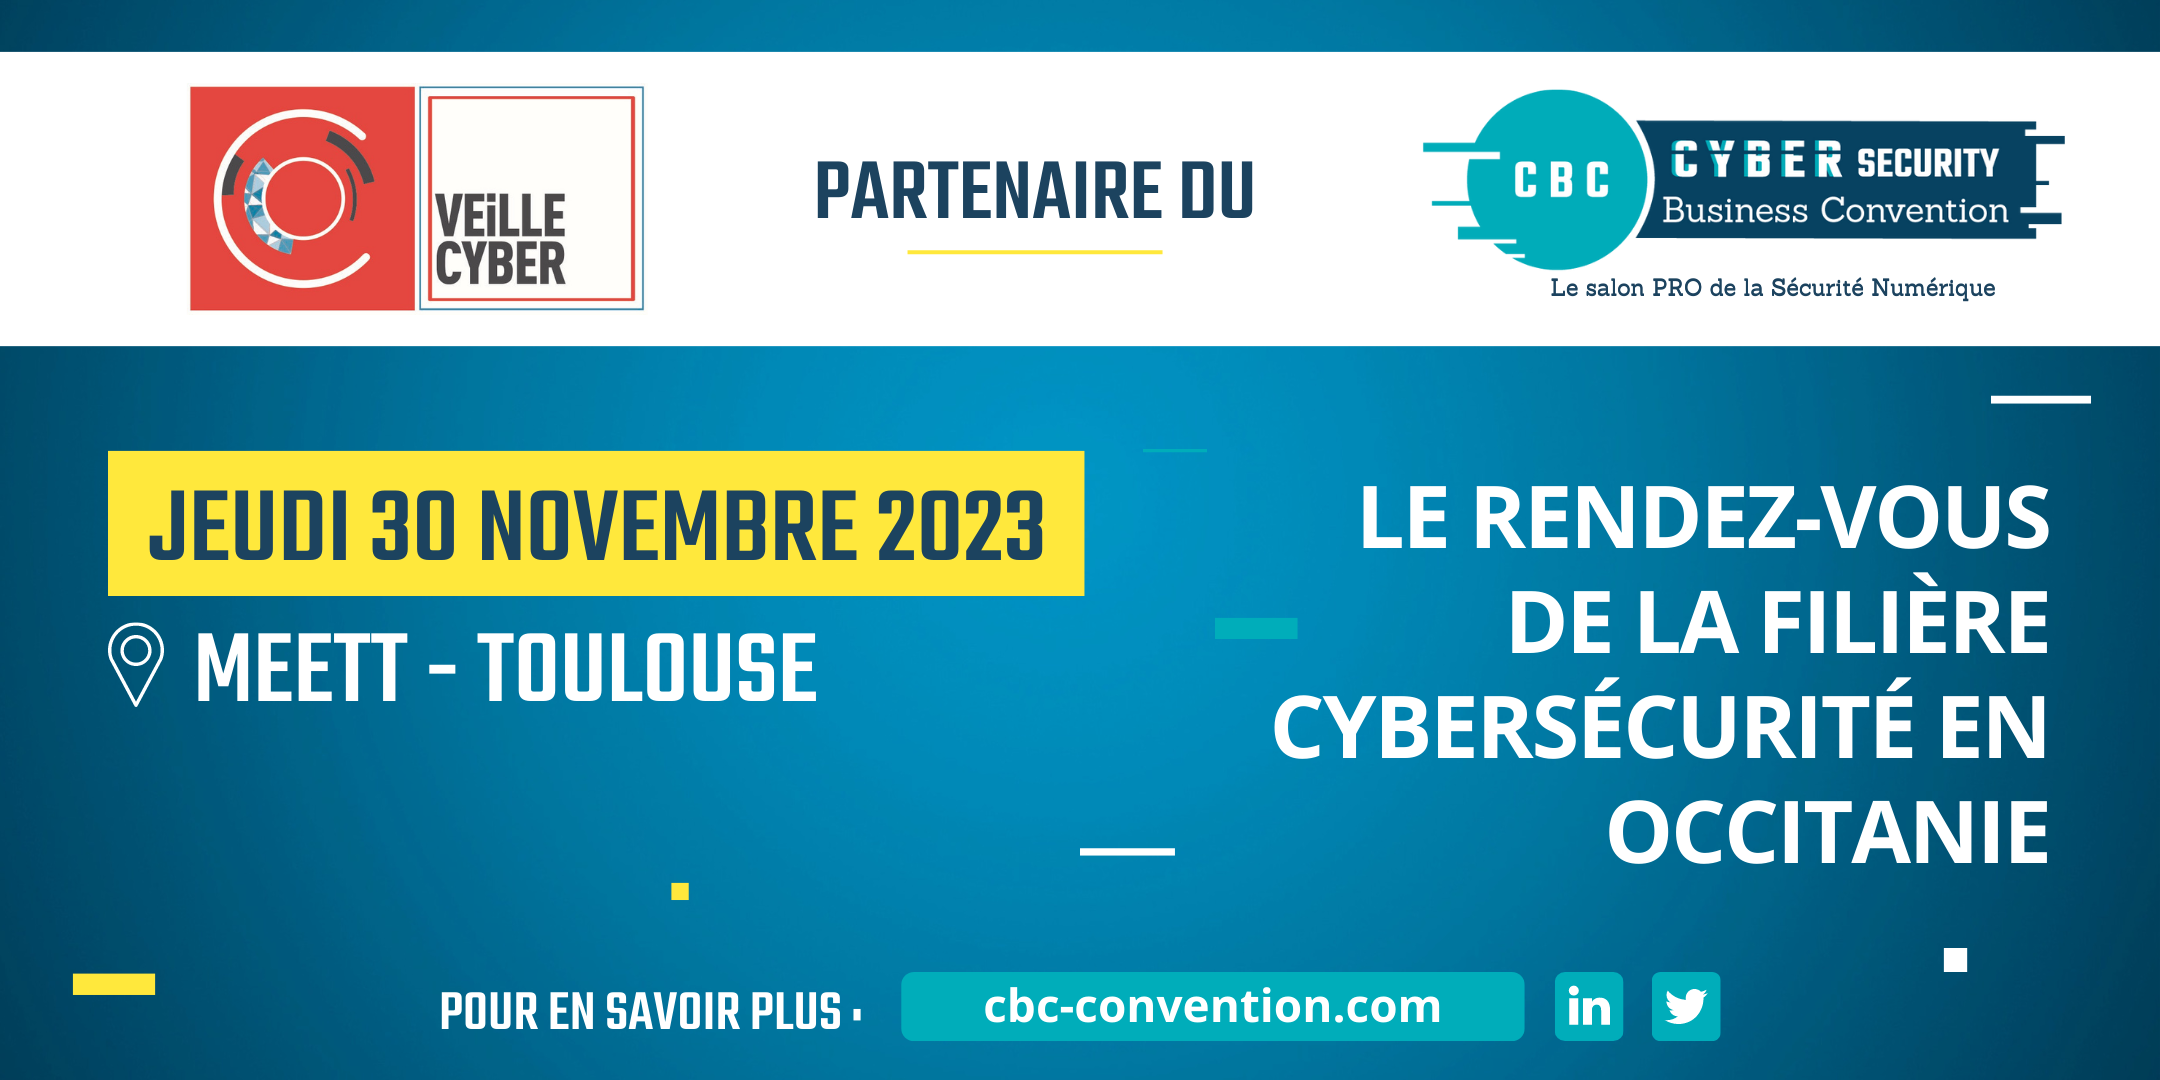 CBC Le rendez-vous Cybersécurité en Occitanie